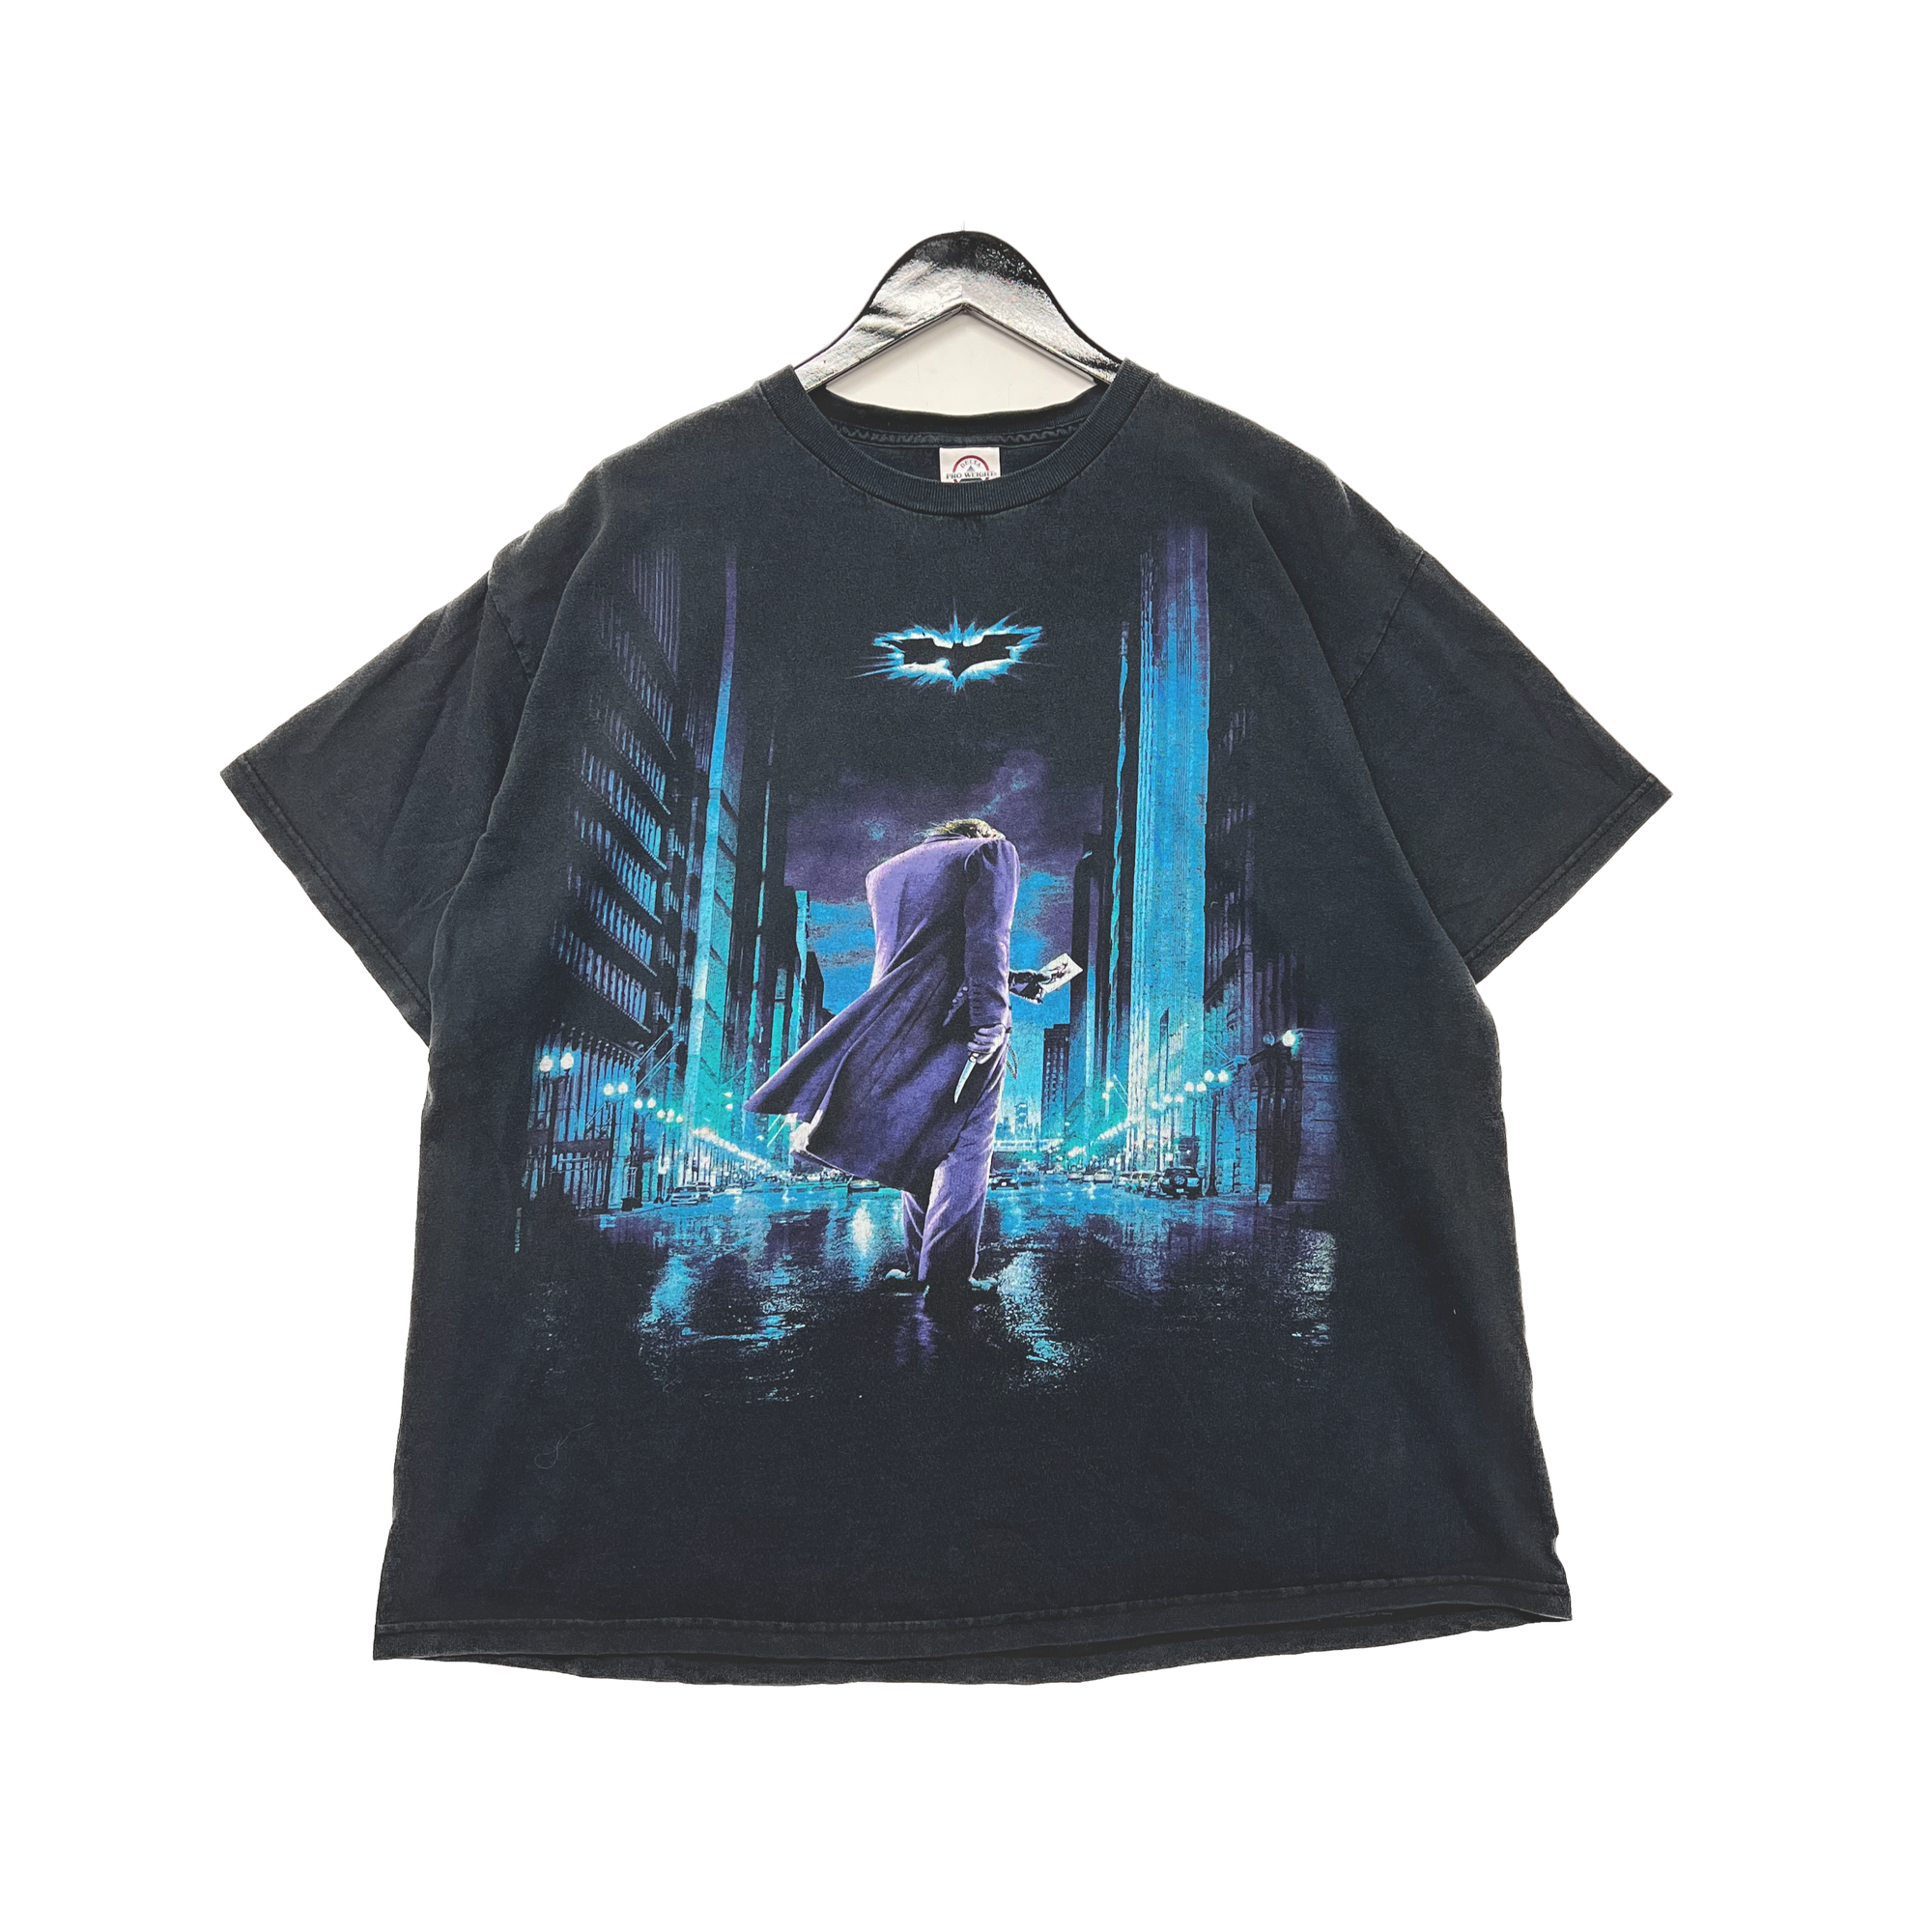 Batman Joker T-shirt Size XL